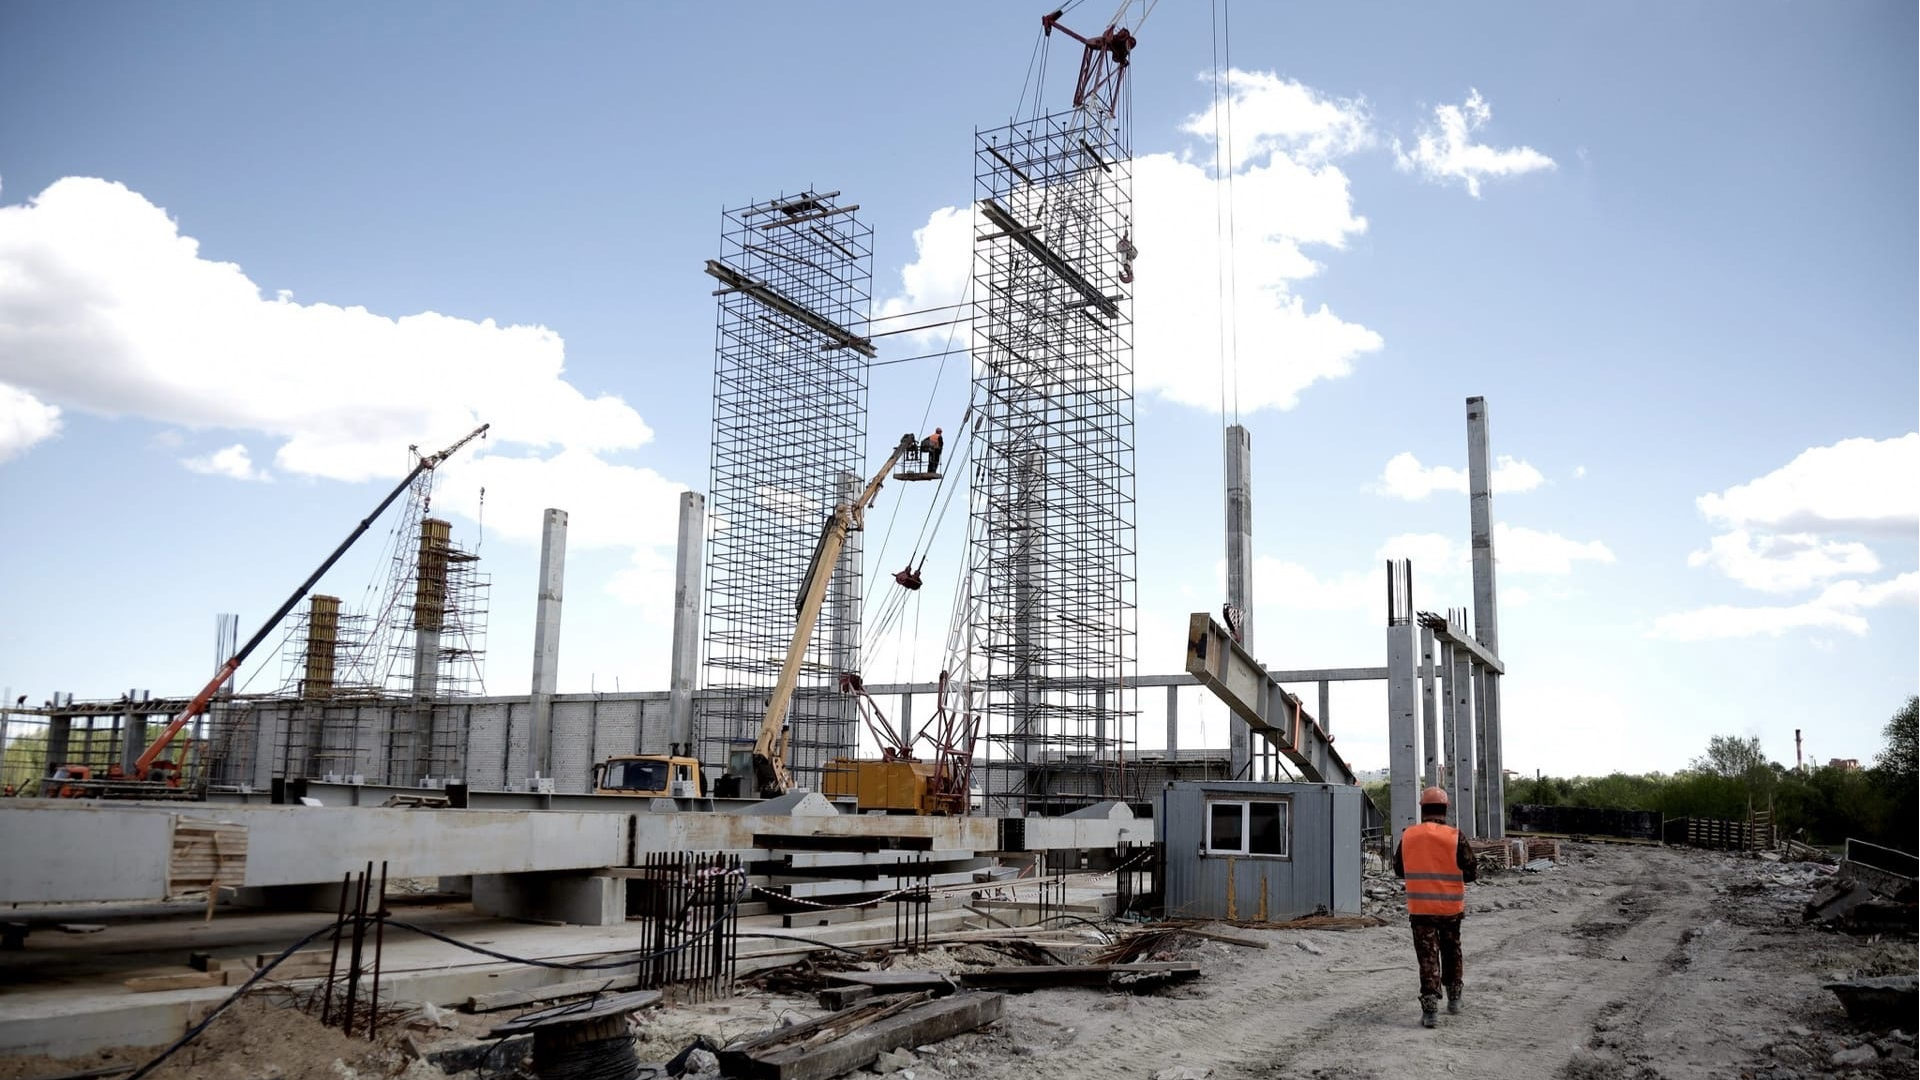 Строительство нового завода стоит 122 млн рублей. Социальные объекты. Темпы строительства. Социальное строительство. Идет стройка.